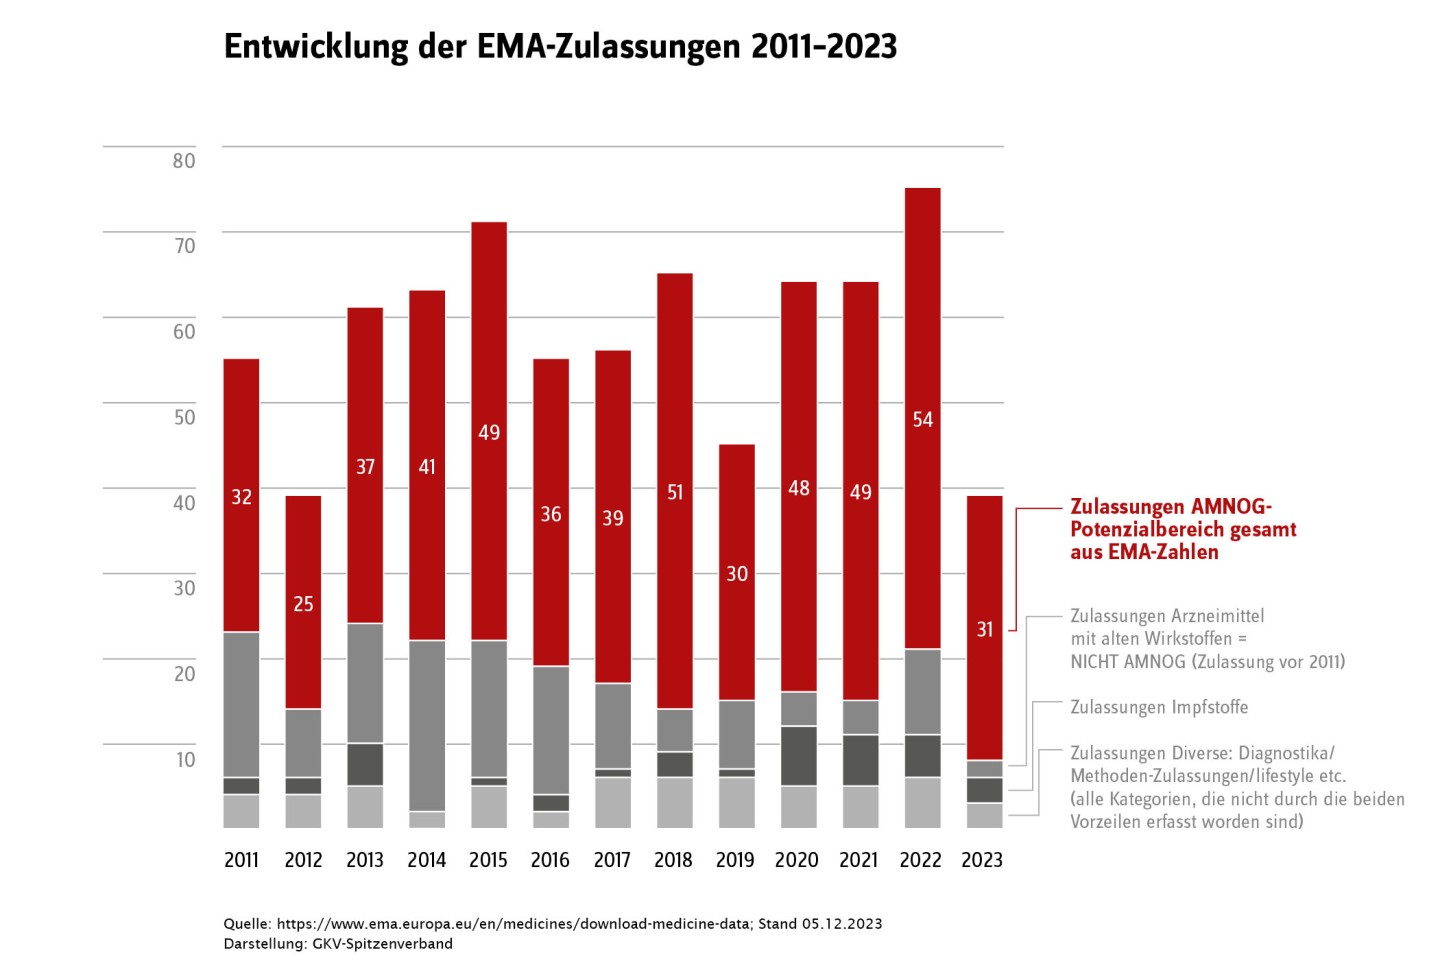 Entwicklungen der EMA-Zulassungen von 2011 bis 2023